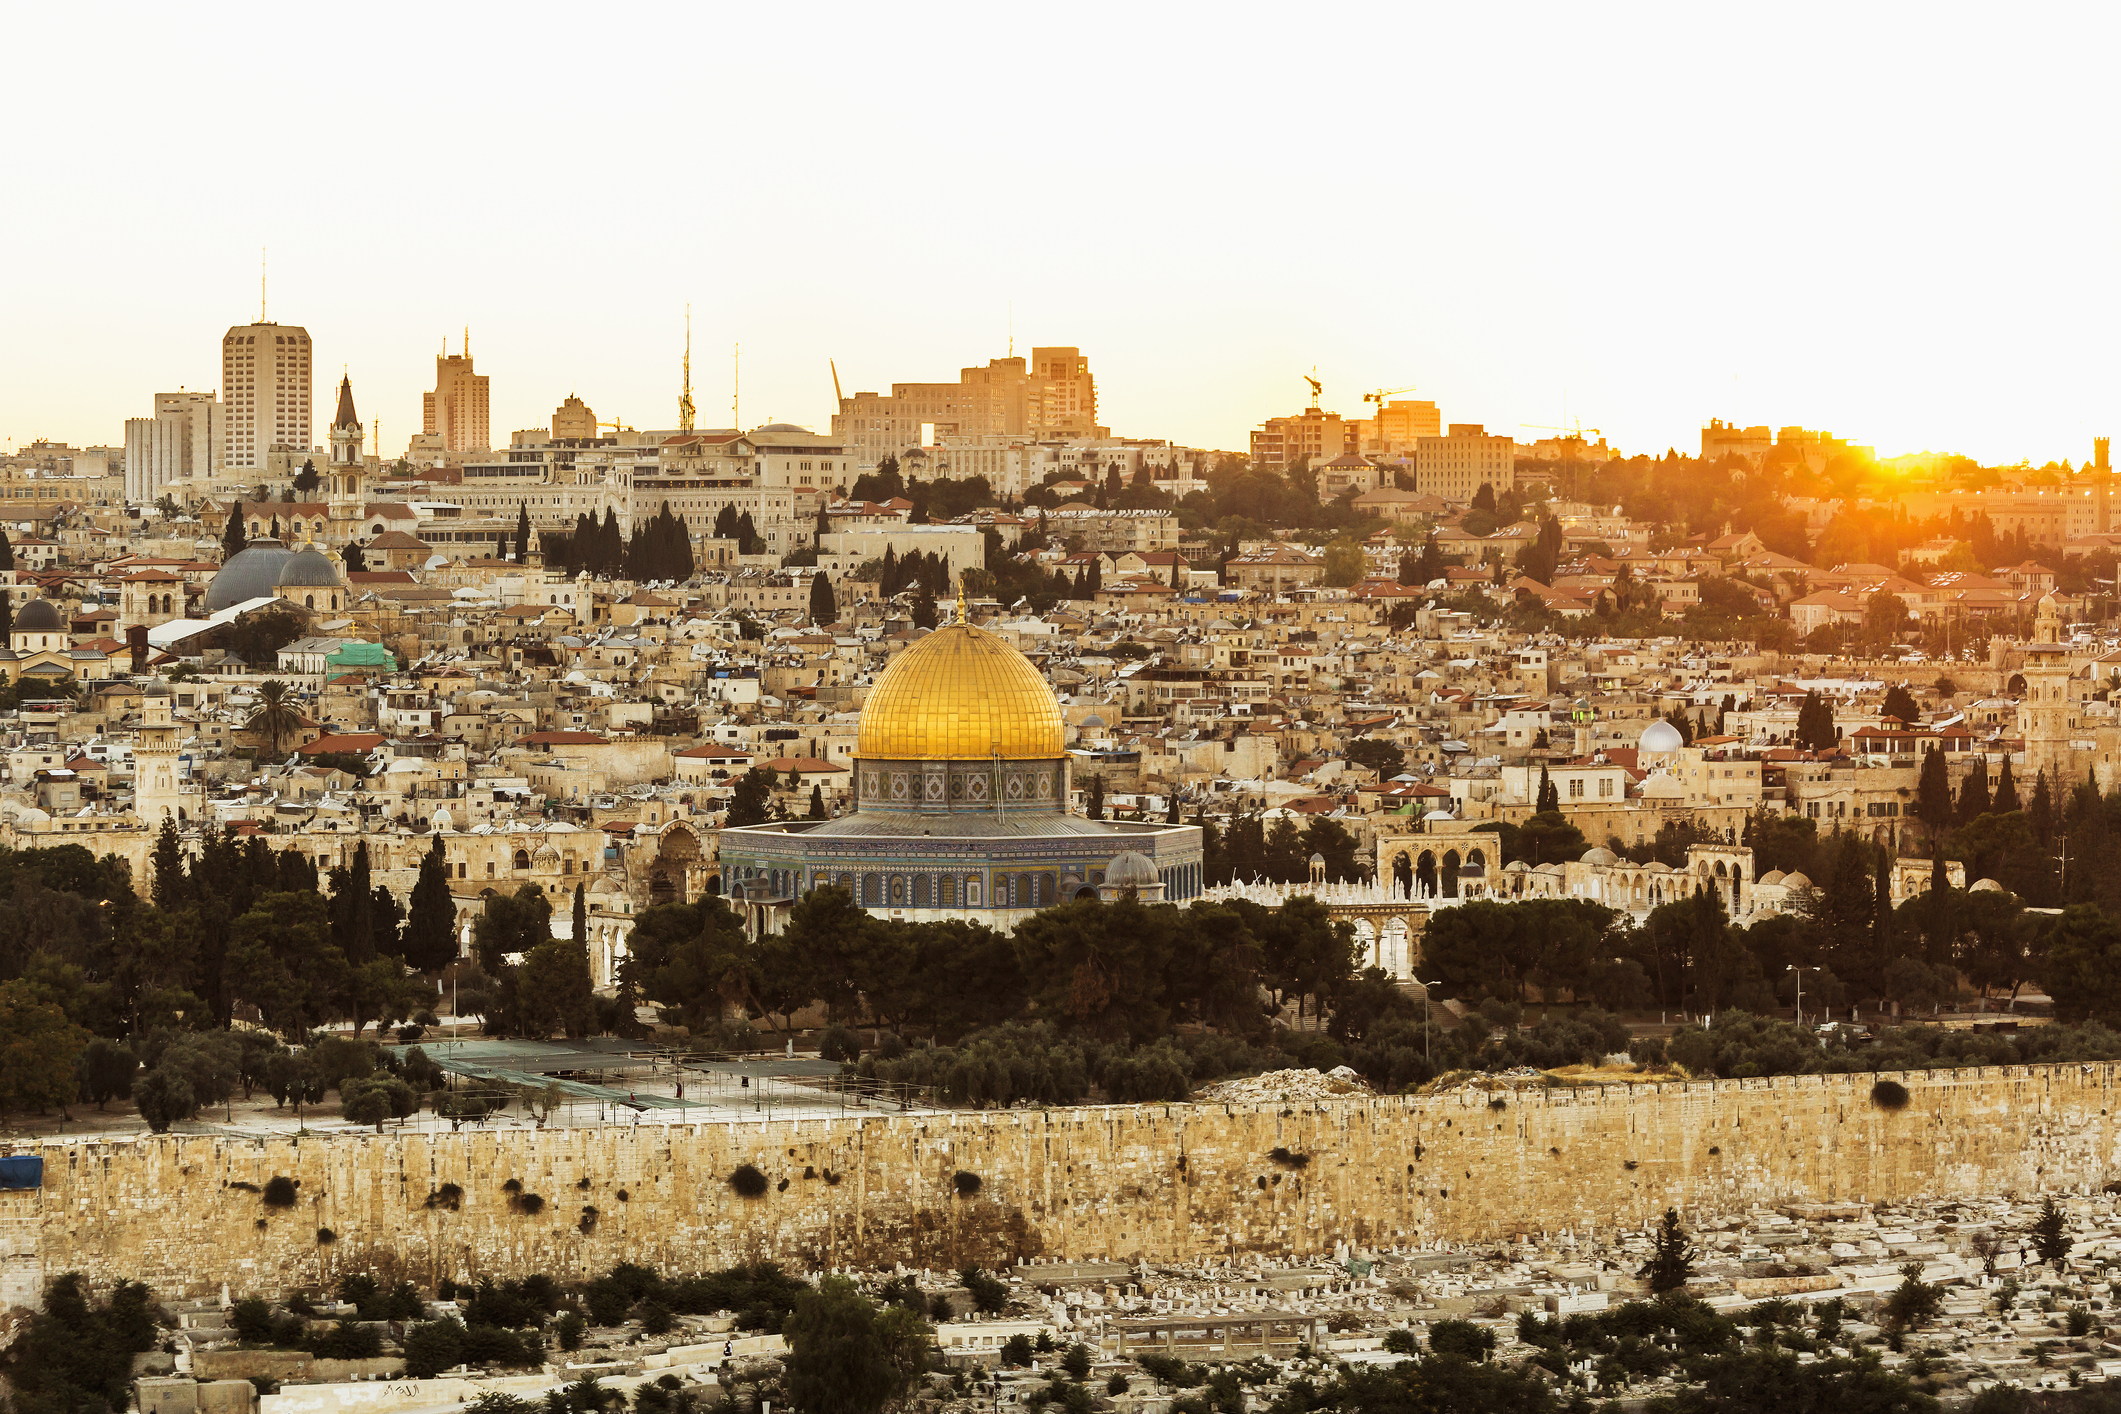 Palestinians hail Australia reversal on Jerusalem stance